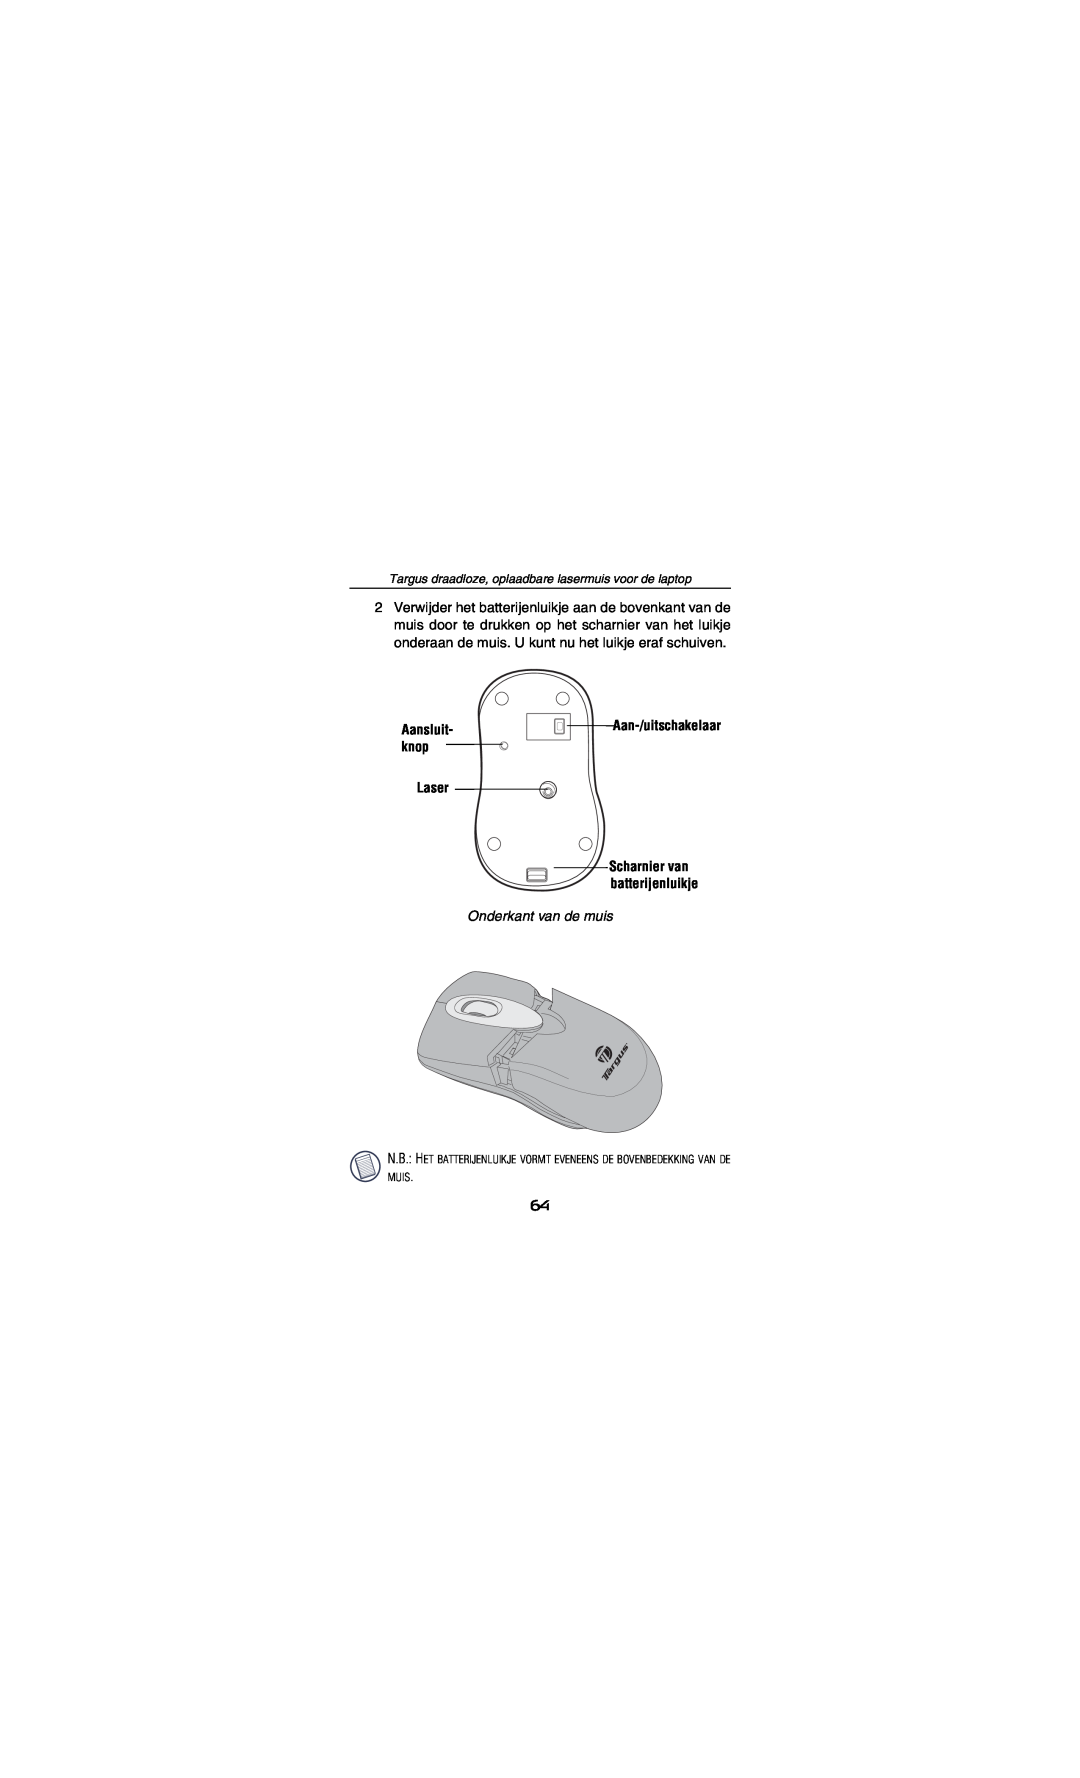 Targus AMW15EU Aan-/uitschakelaar, Laser, Onderkant van de muis, Aansluit- knop, Scharnier van batterijenluikje 